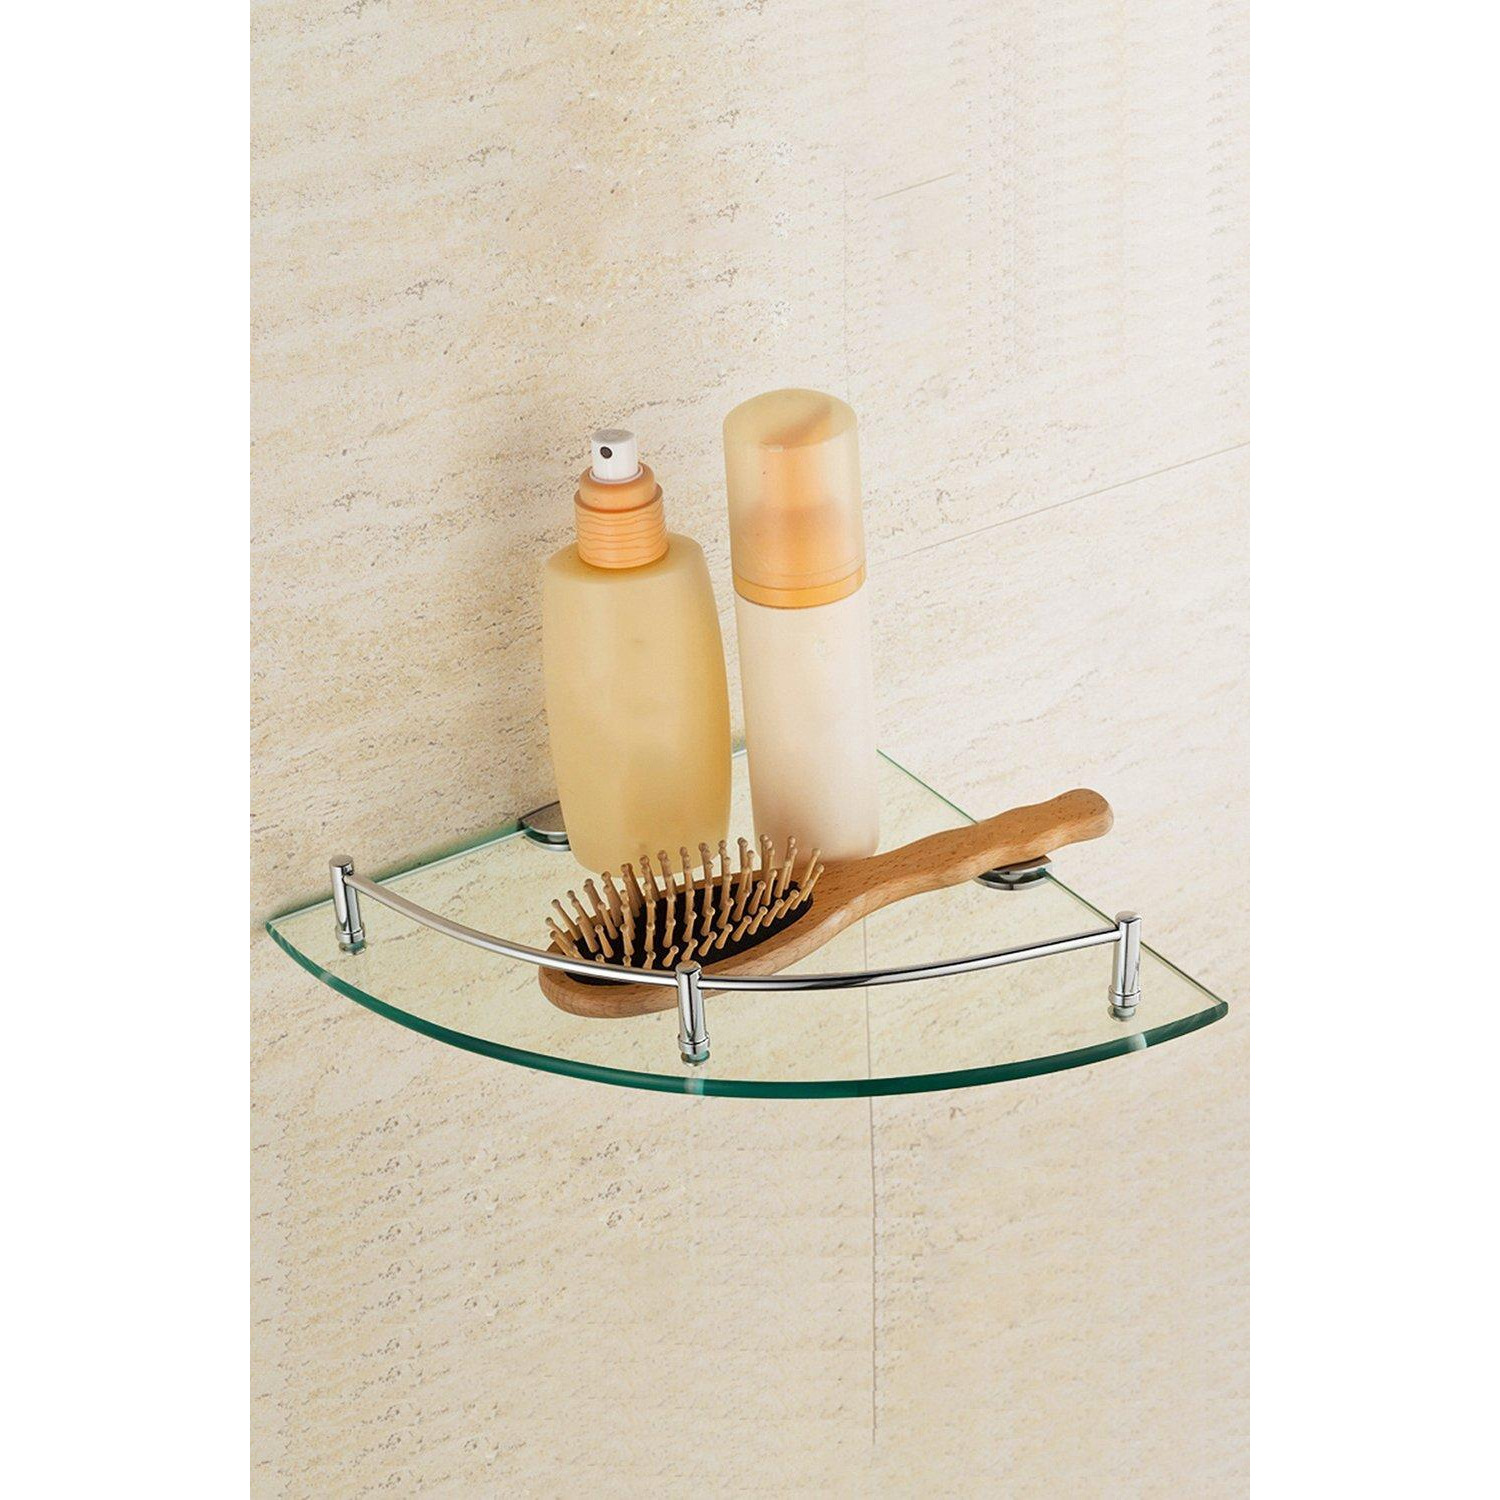 1 Tier Bathroom Glass Corner Shelf Wall Mounted - image 1